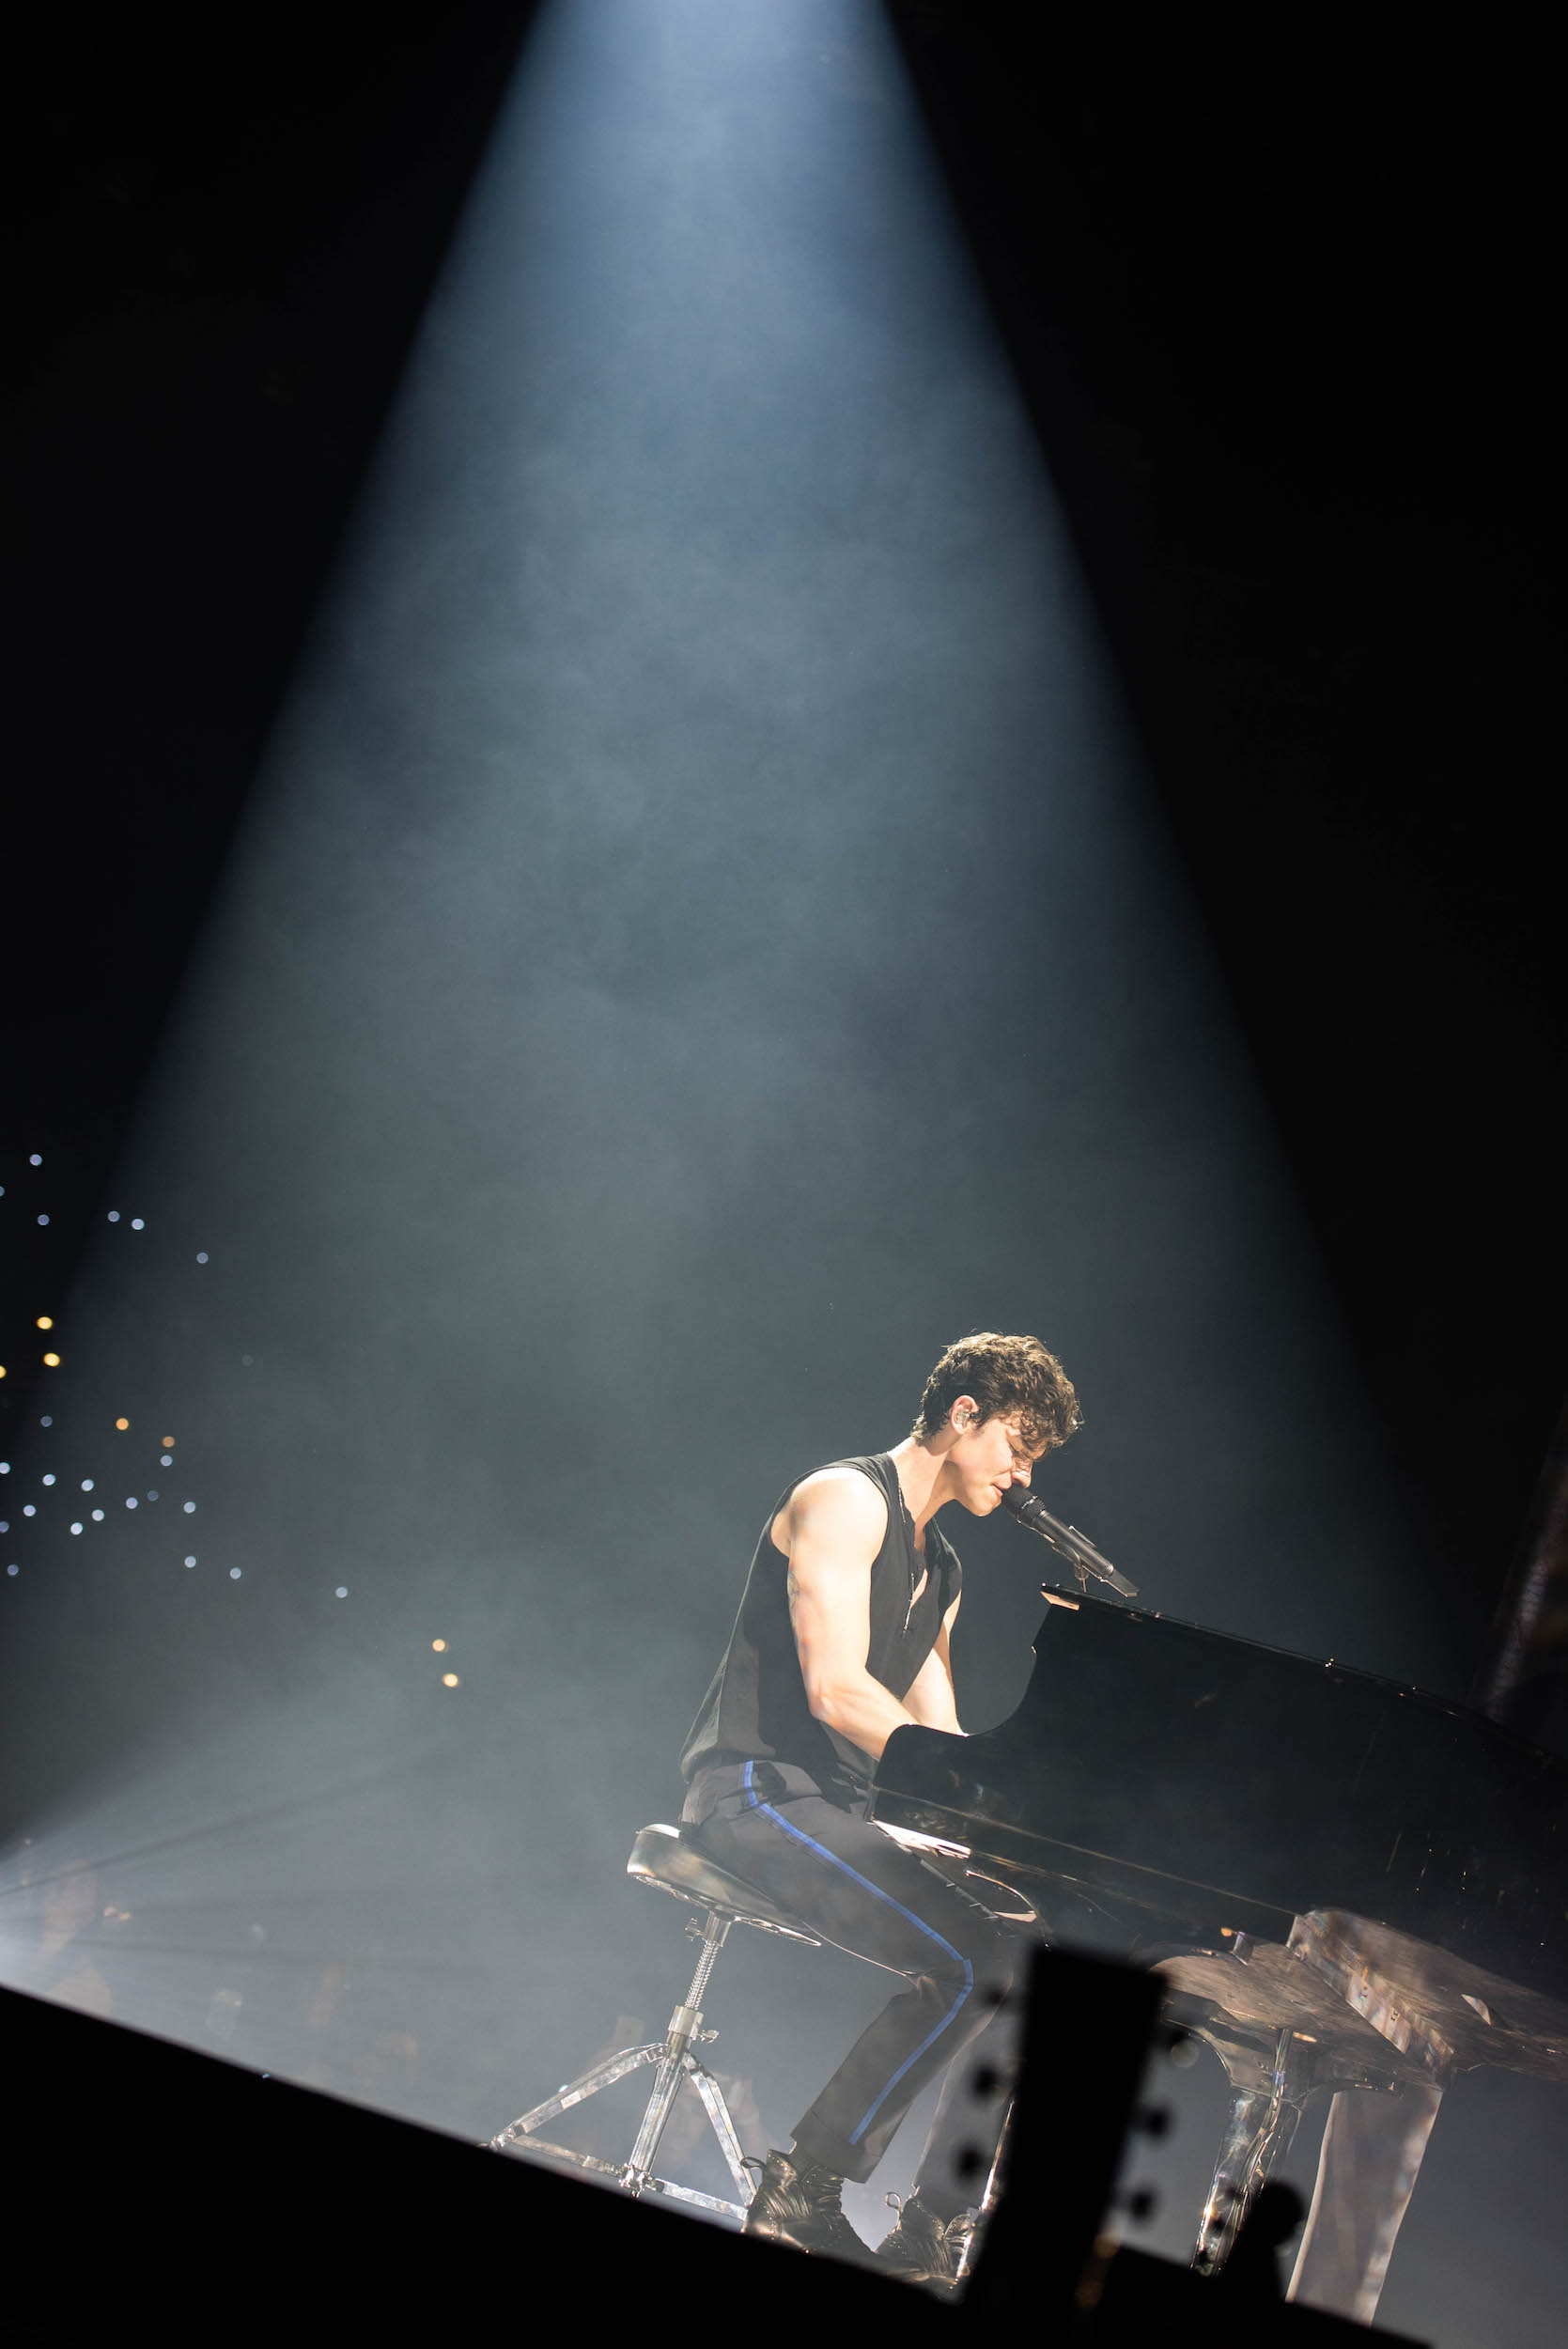 Shawn Mendes am Klavier, ...